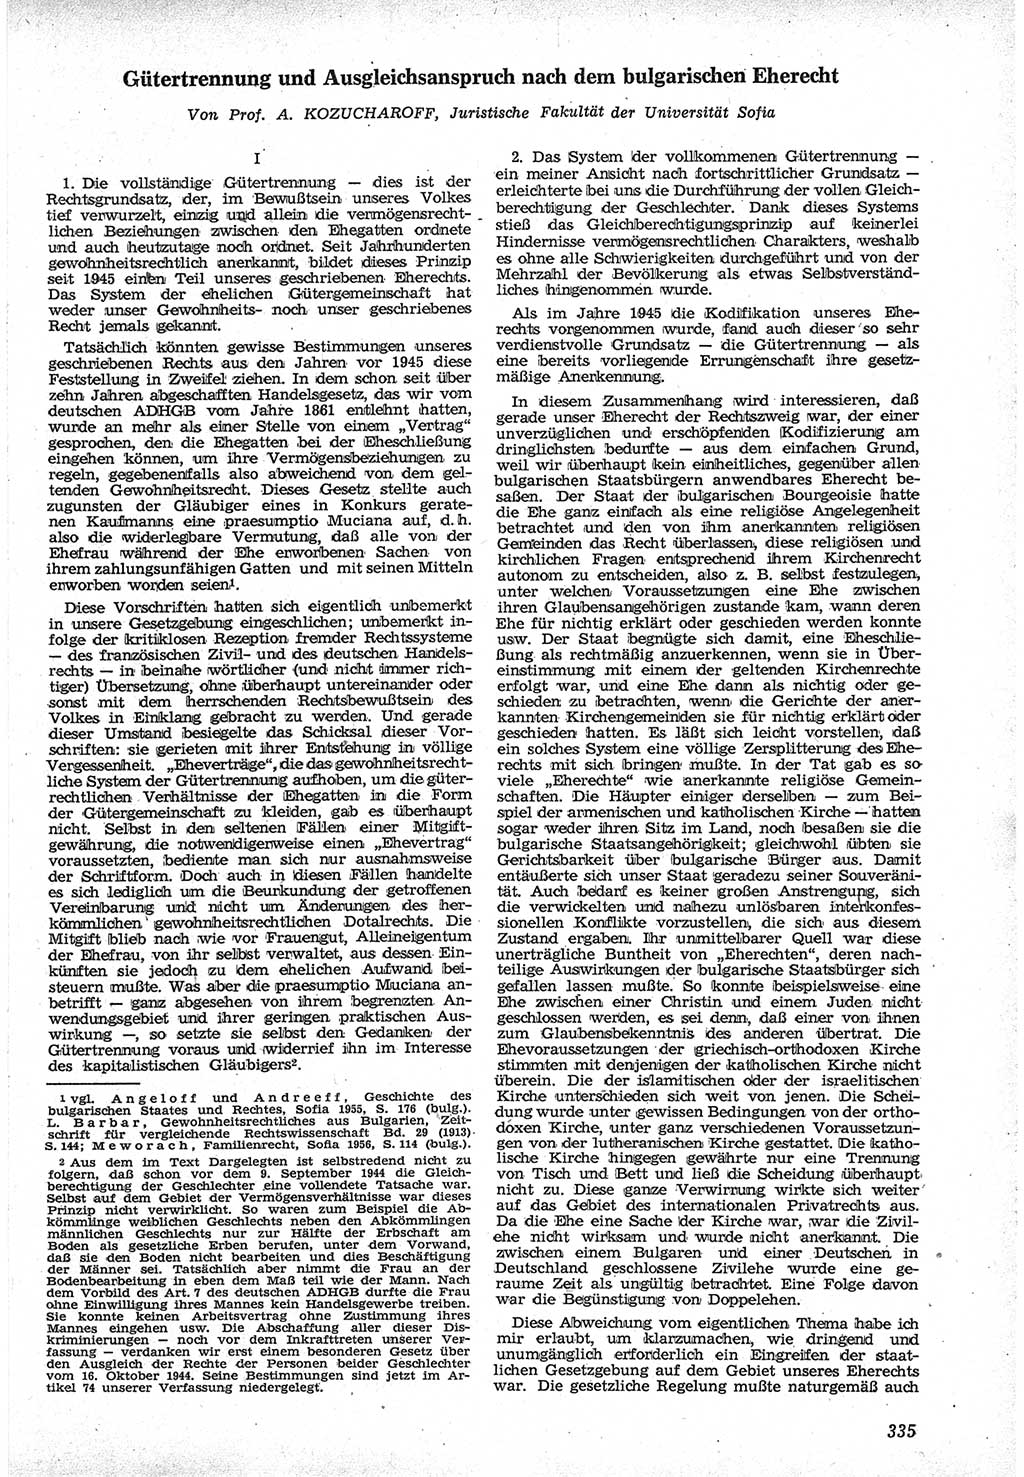 Neue Justiz (NJ), Zeitschrift für Recht und Rechtswissenschaft [Deutsche Demokratische Republik (DDR)], 12. Jahrgang 1958, Seite 335 (NJ DDR 1958, S. 335)